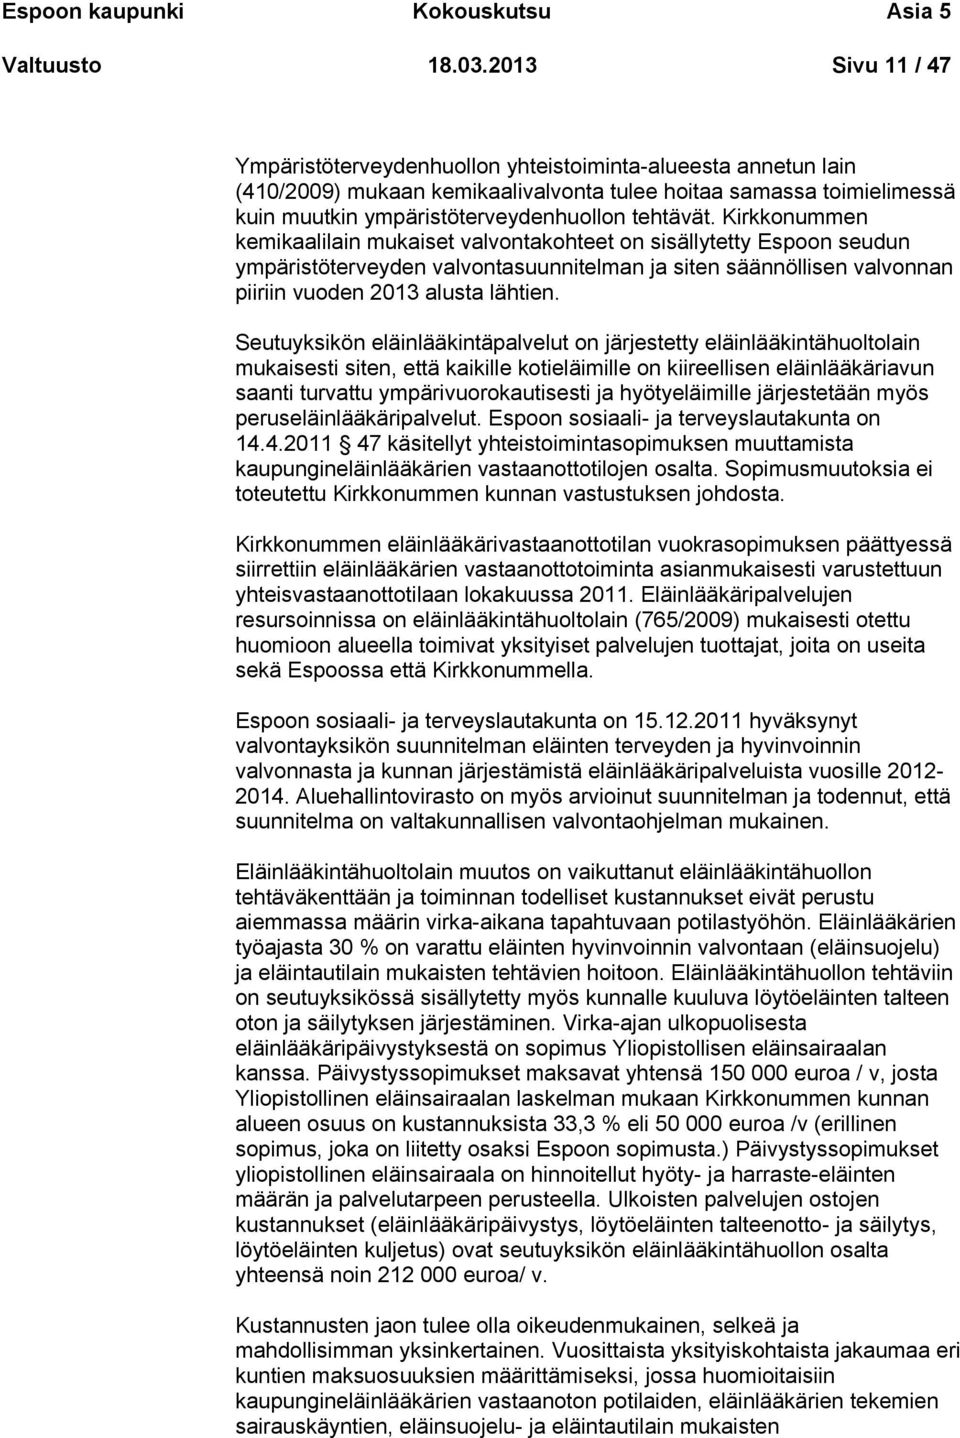 Kirkkonummen kemikaalilain mukaiset valvontakohteet on sisällytetty Espoon seudun ympäristöterveyden valvontasuunnitelman ja siten säännöllisen valvonnan piiriin vuoden 2013 alusta lähtien.